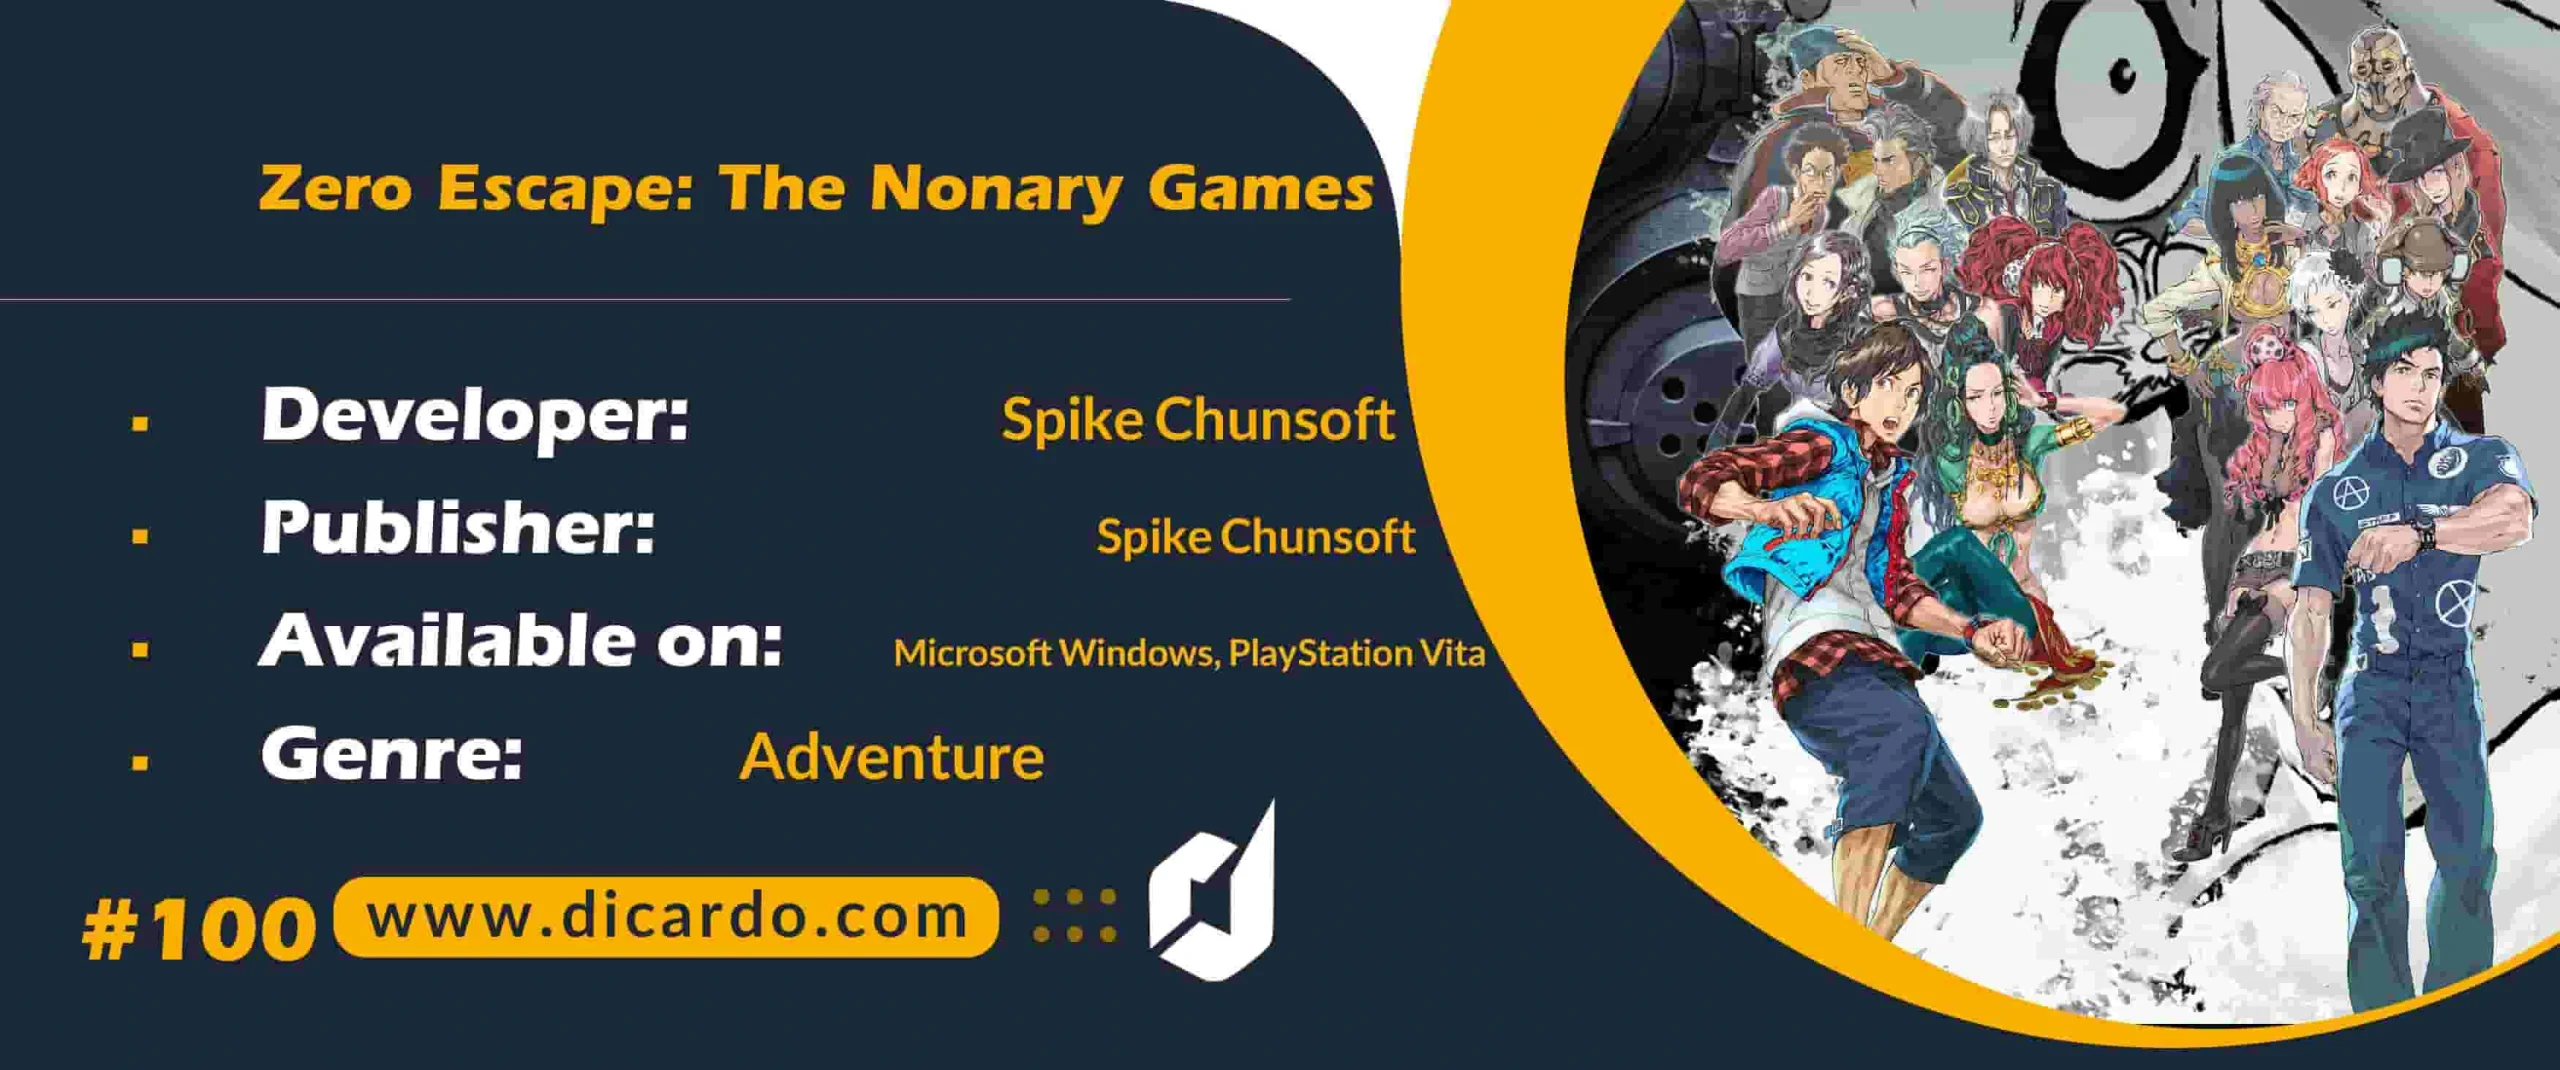 #100 زیرو اسکاپ د نانری گیمز Zero Escape: The Nonary Games آخرین مورد از برترین بازیهای کامپیوتری